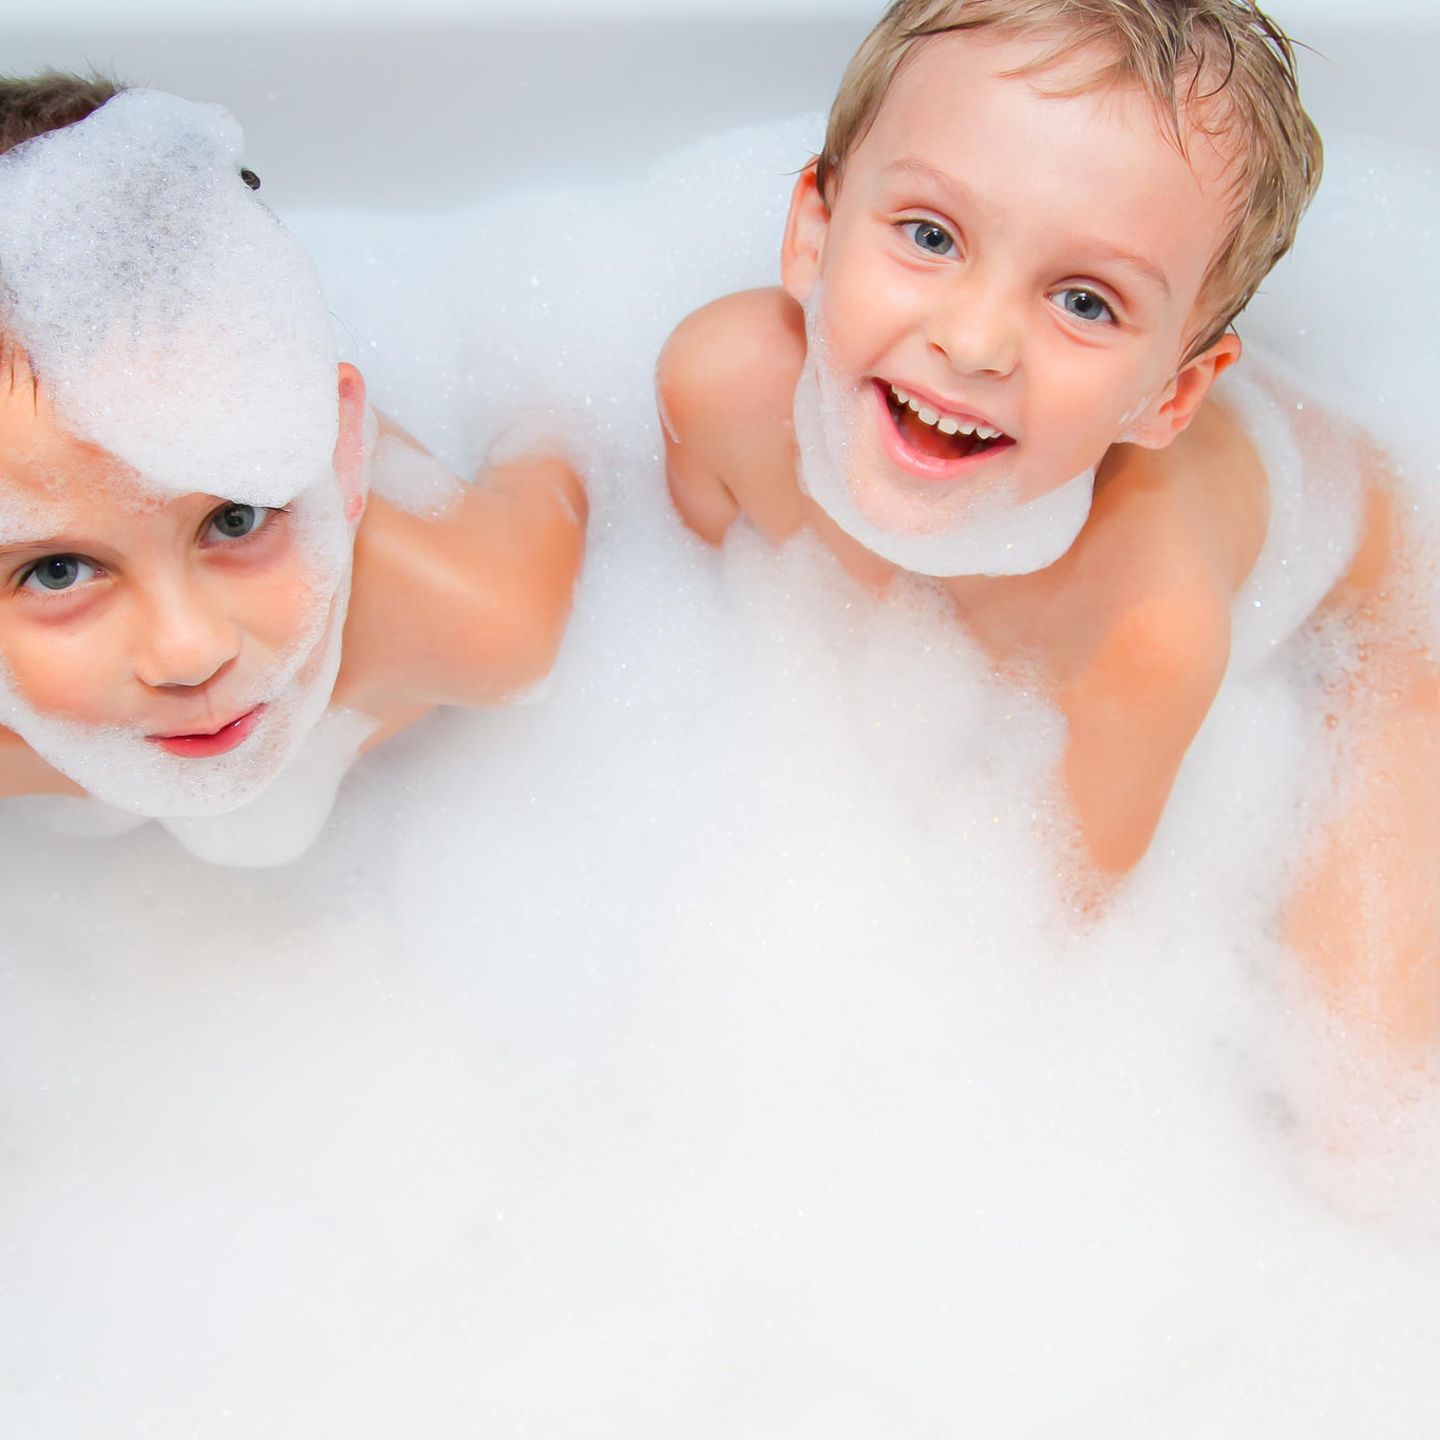 Das bringen nur Jungs: Jungs-Mamas aufgepasst: Jungs in der Badewanne